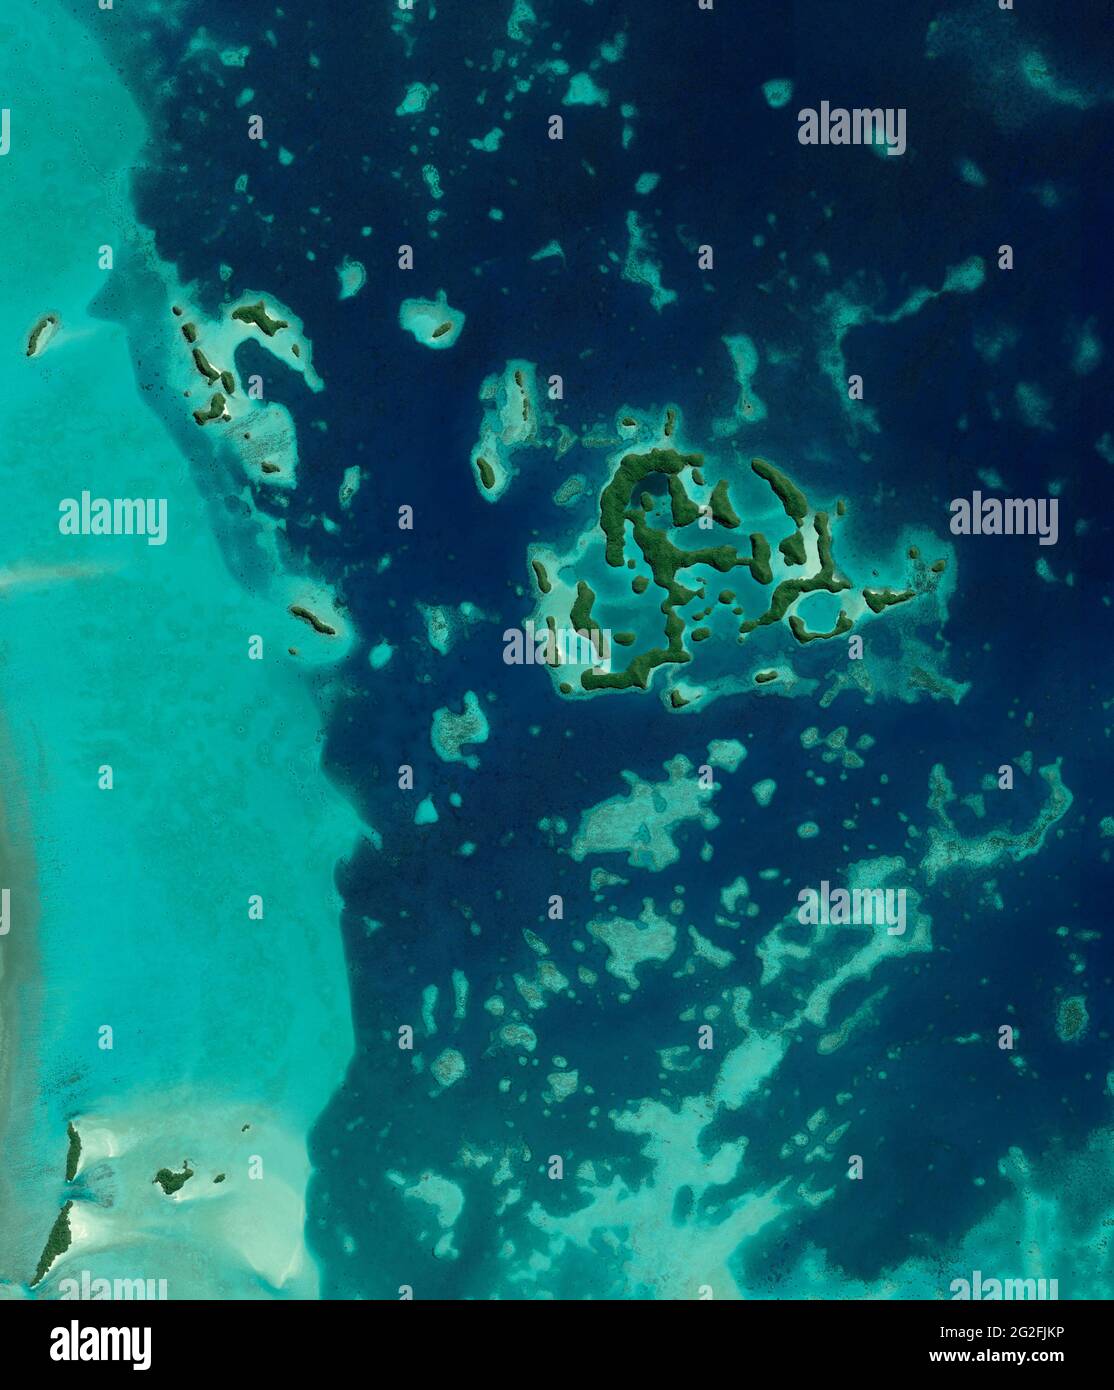 Satellitenansicht von Palau, Mikronesien, Südinsel, unbewohntes Atoll. Kristalliner, transparenter und klarer Meeresboden. Tropische Inseln. Nasa Stockfoto